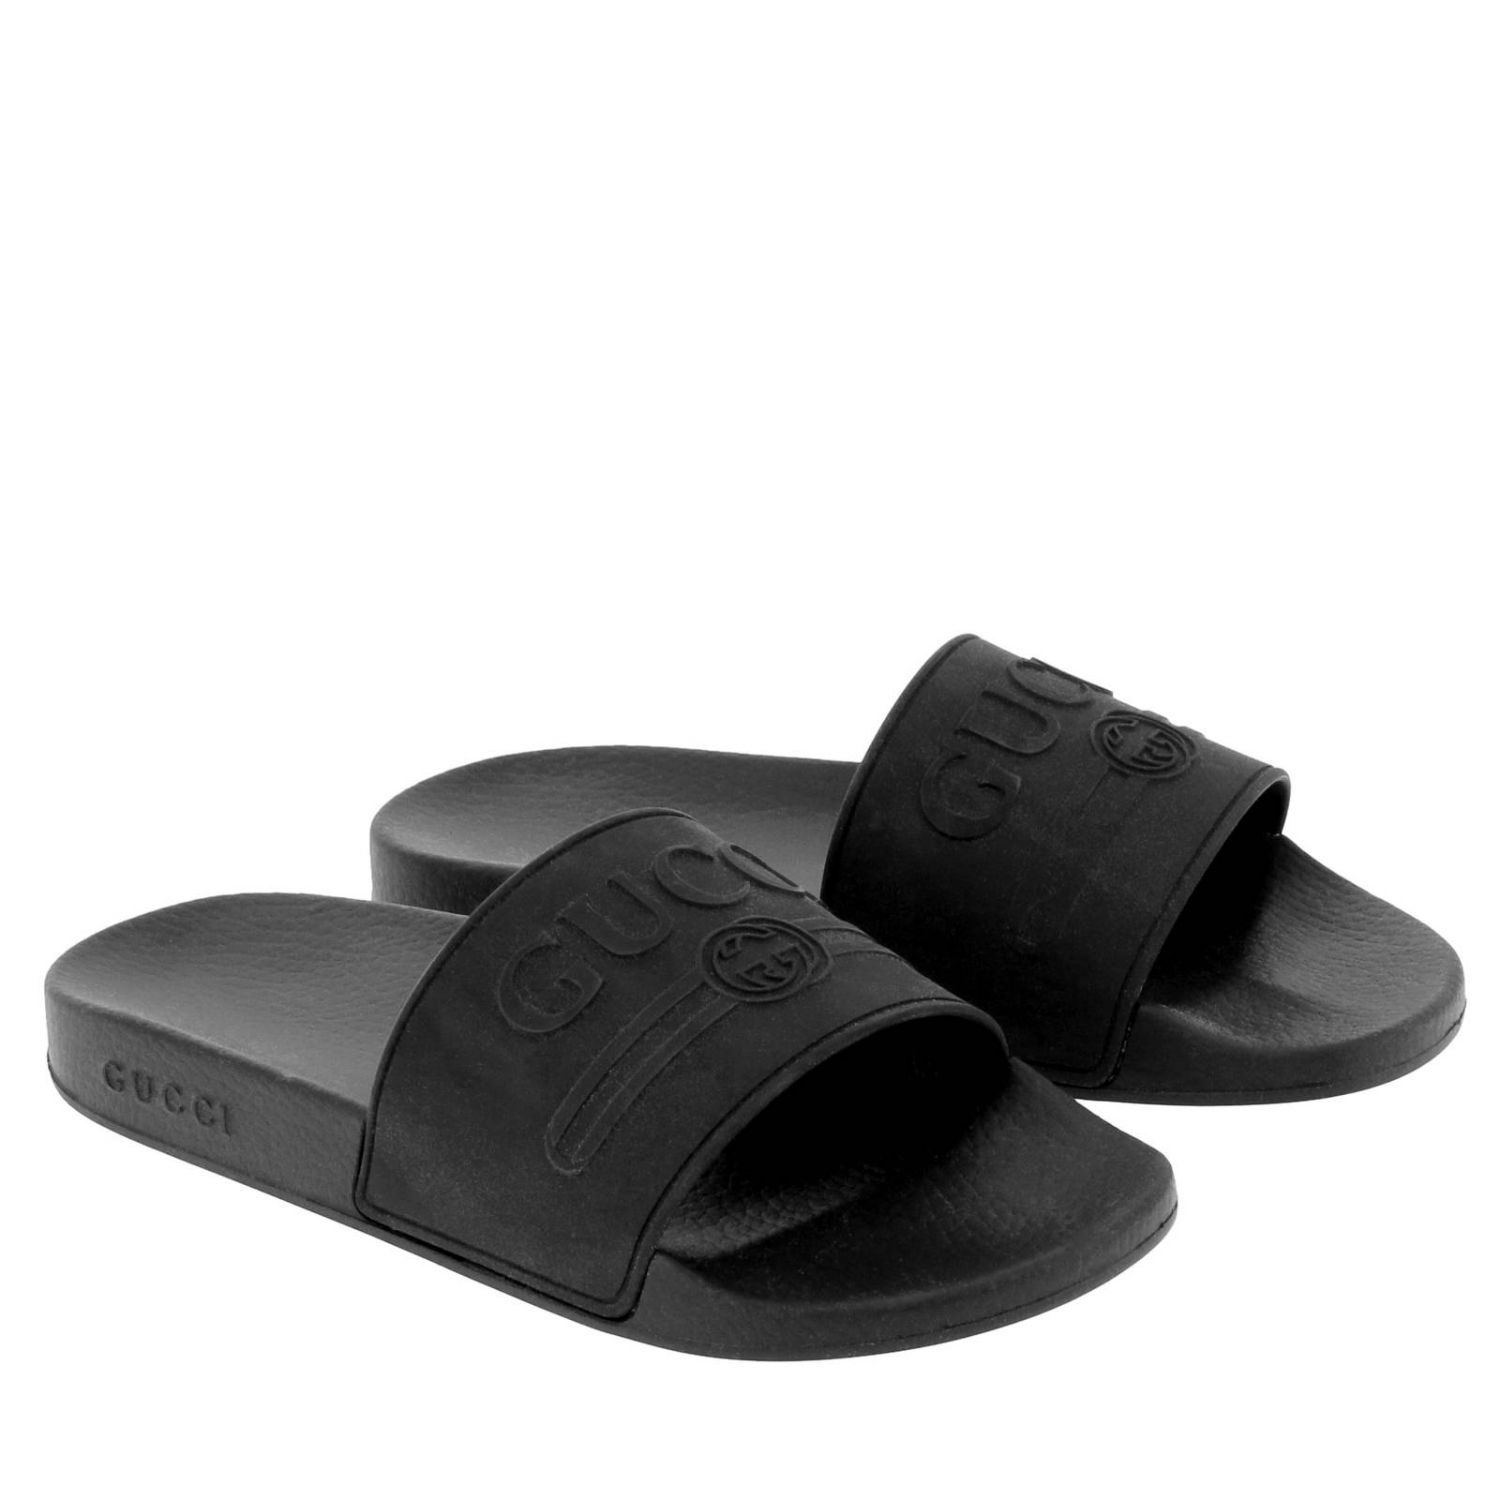 Shoes men Gucci | Sandals Gucci Men Black | Sandals Gucci 522887 JCZ00 ...